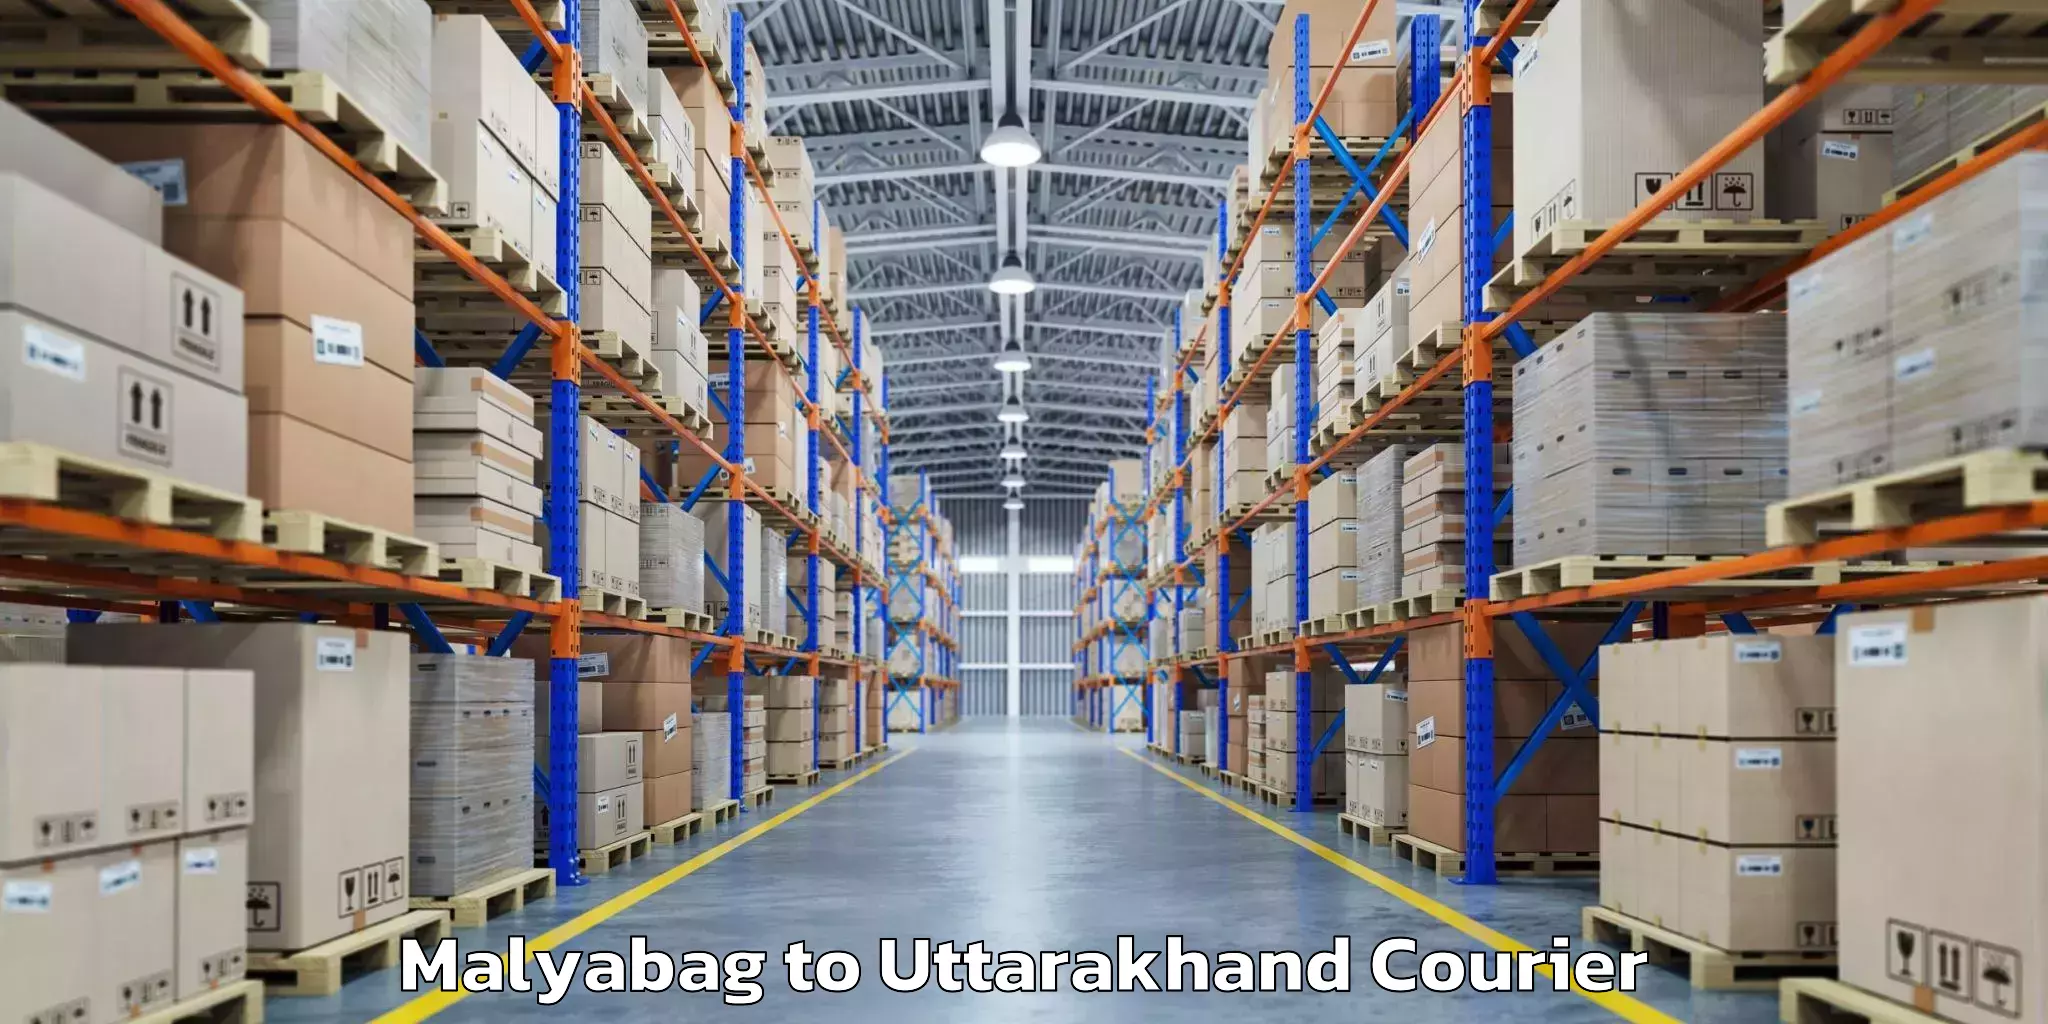 Luggage shipment tracking Malyabag to Uttarakhand